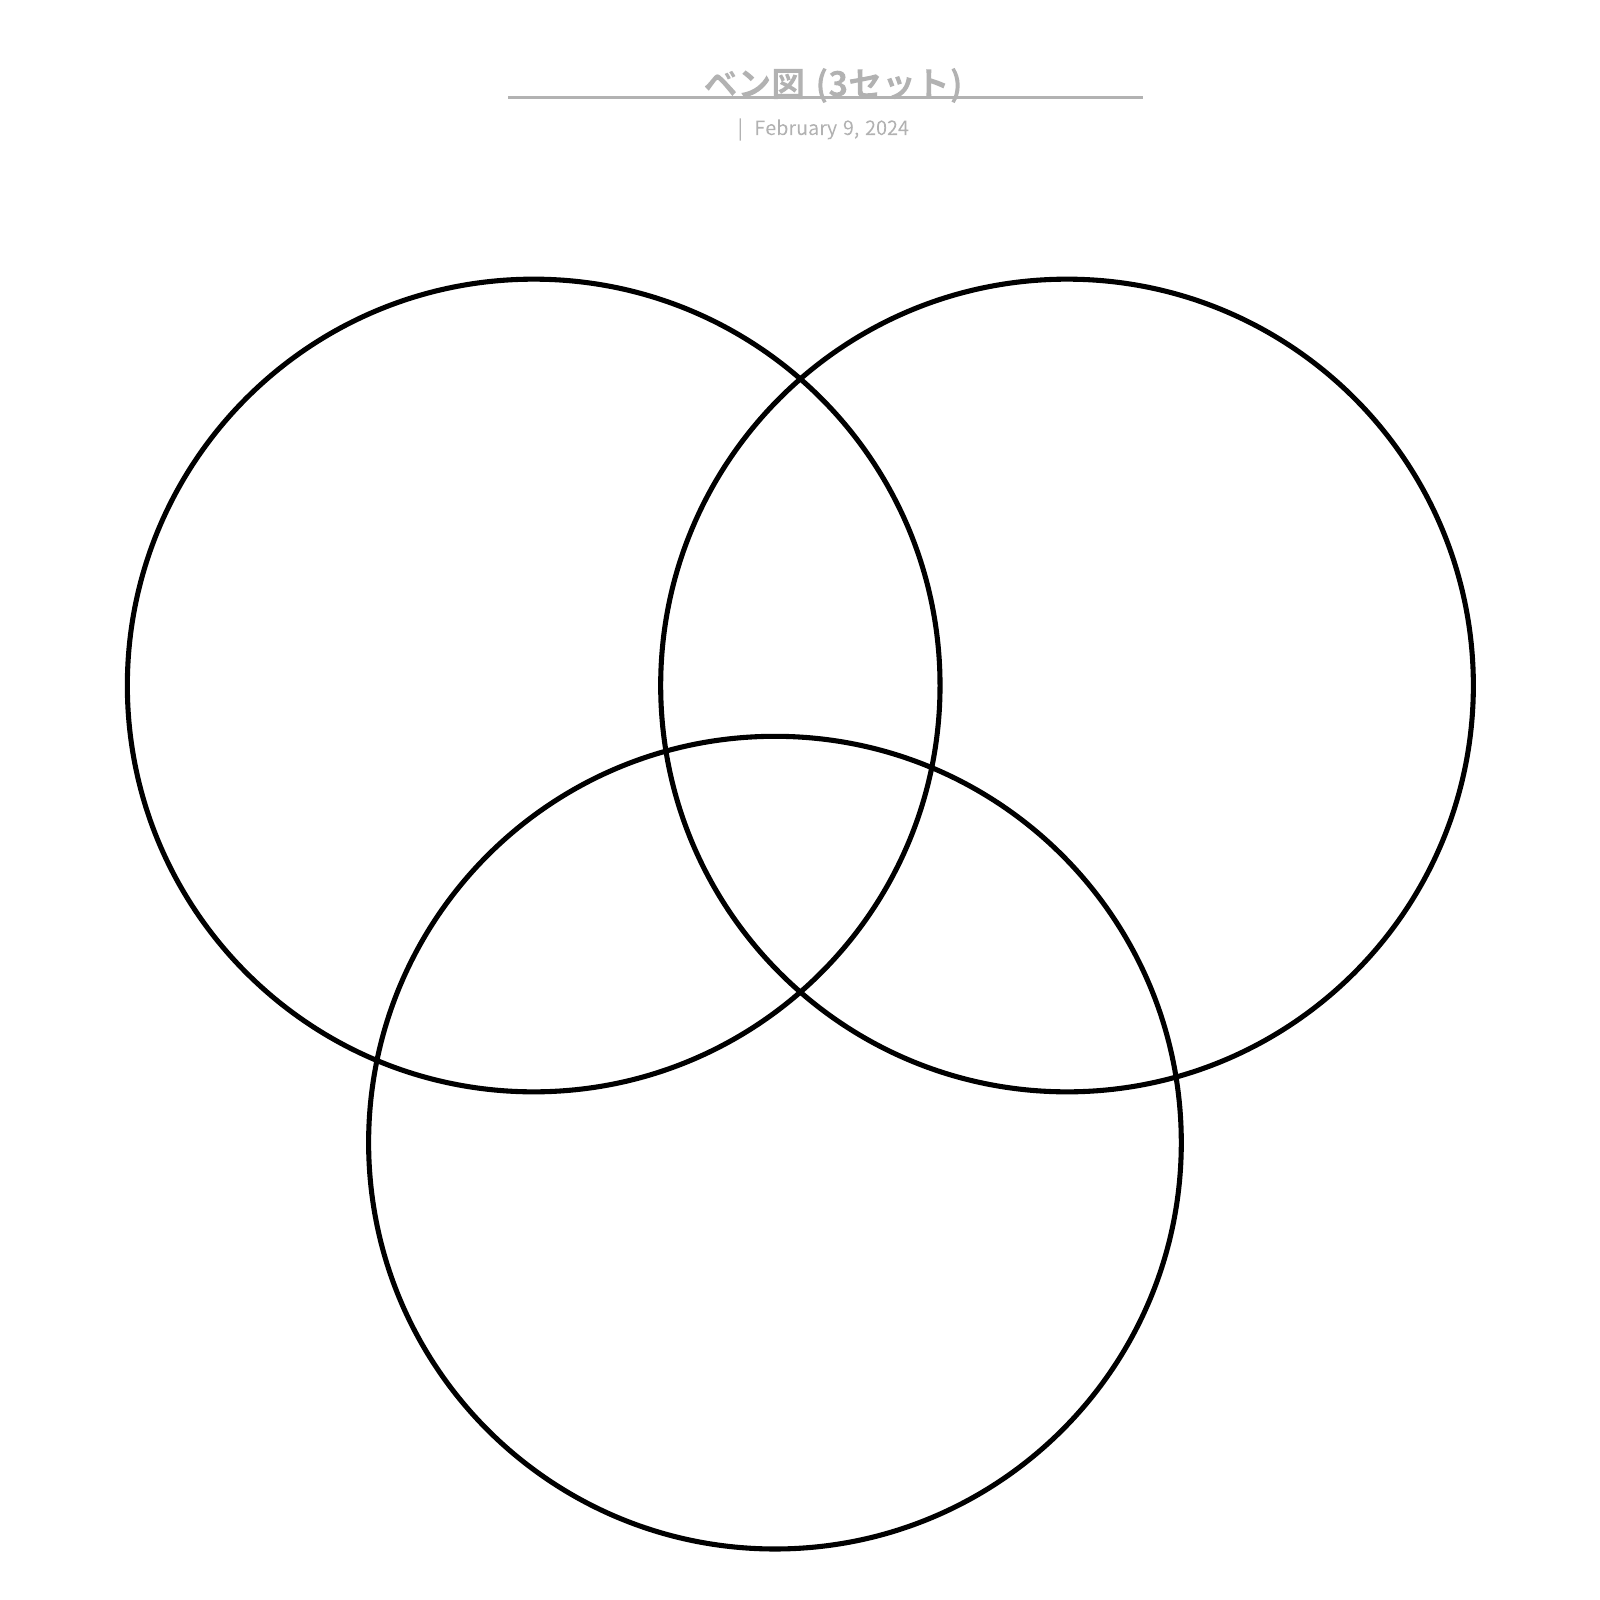 ３つのベン図の例